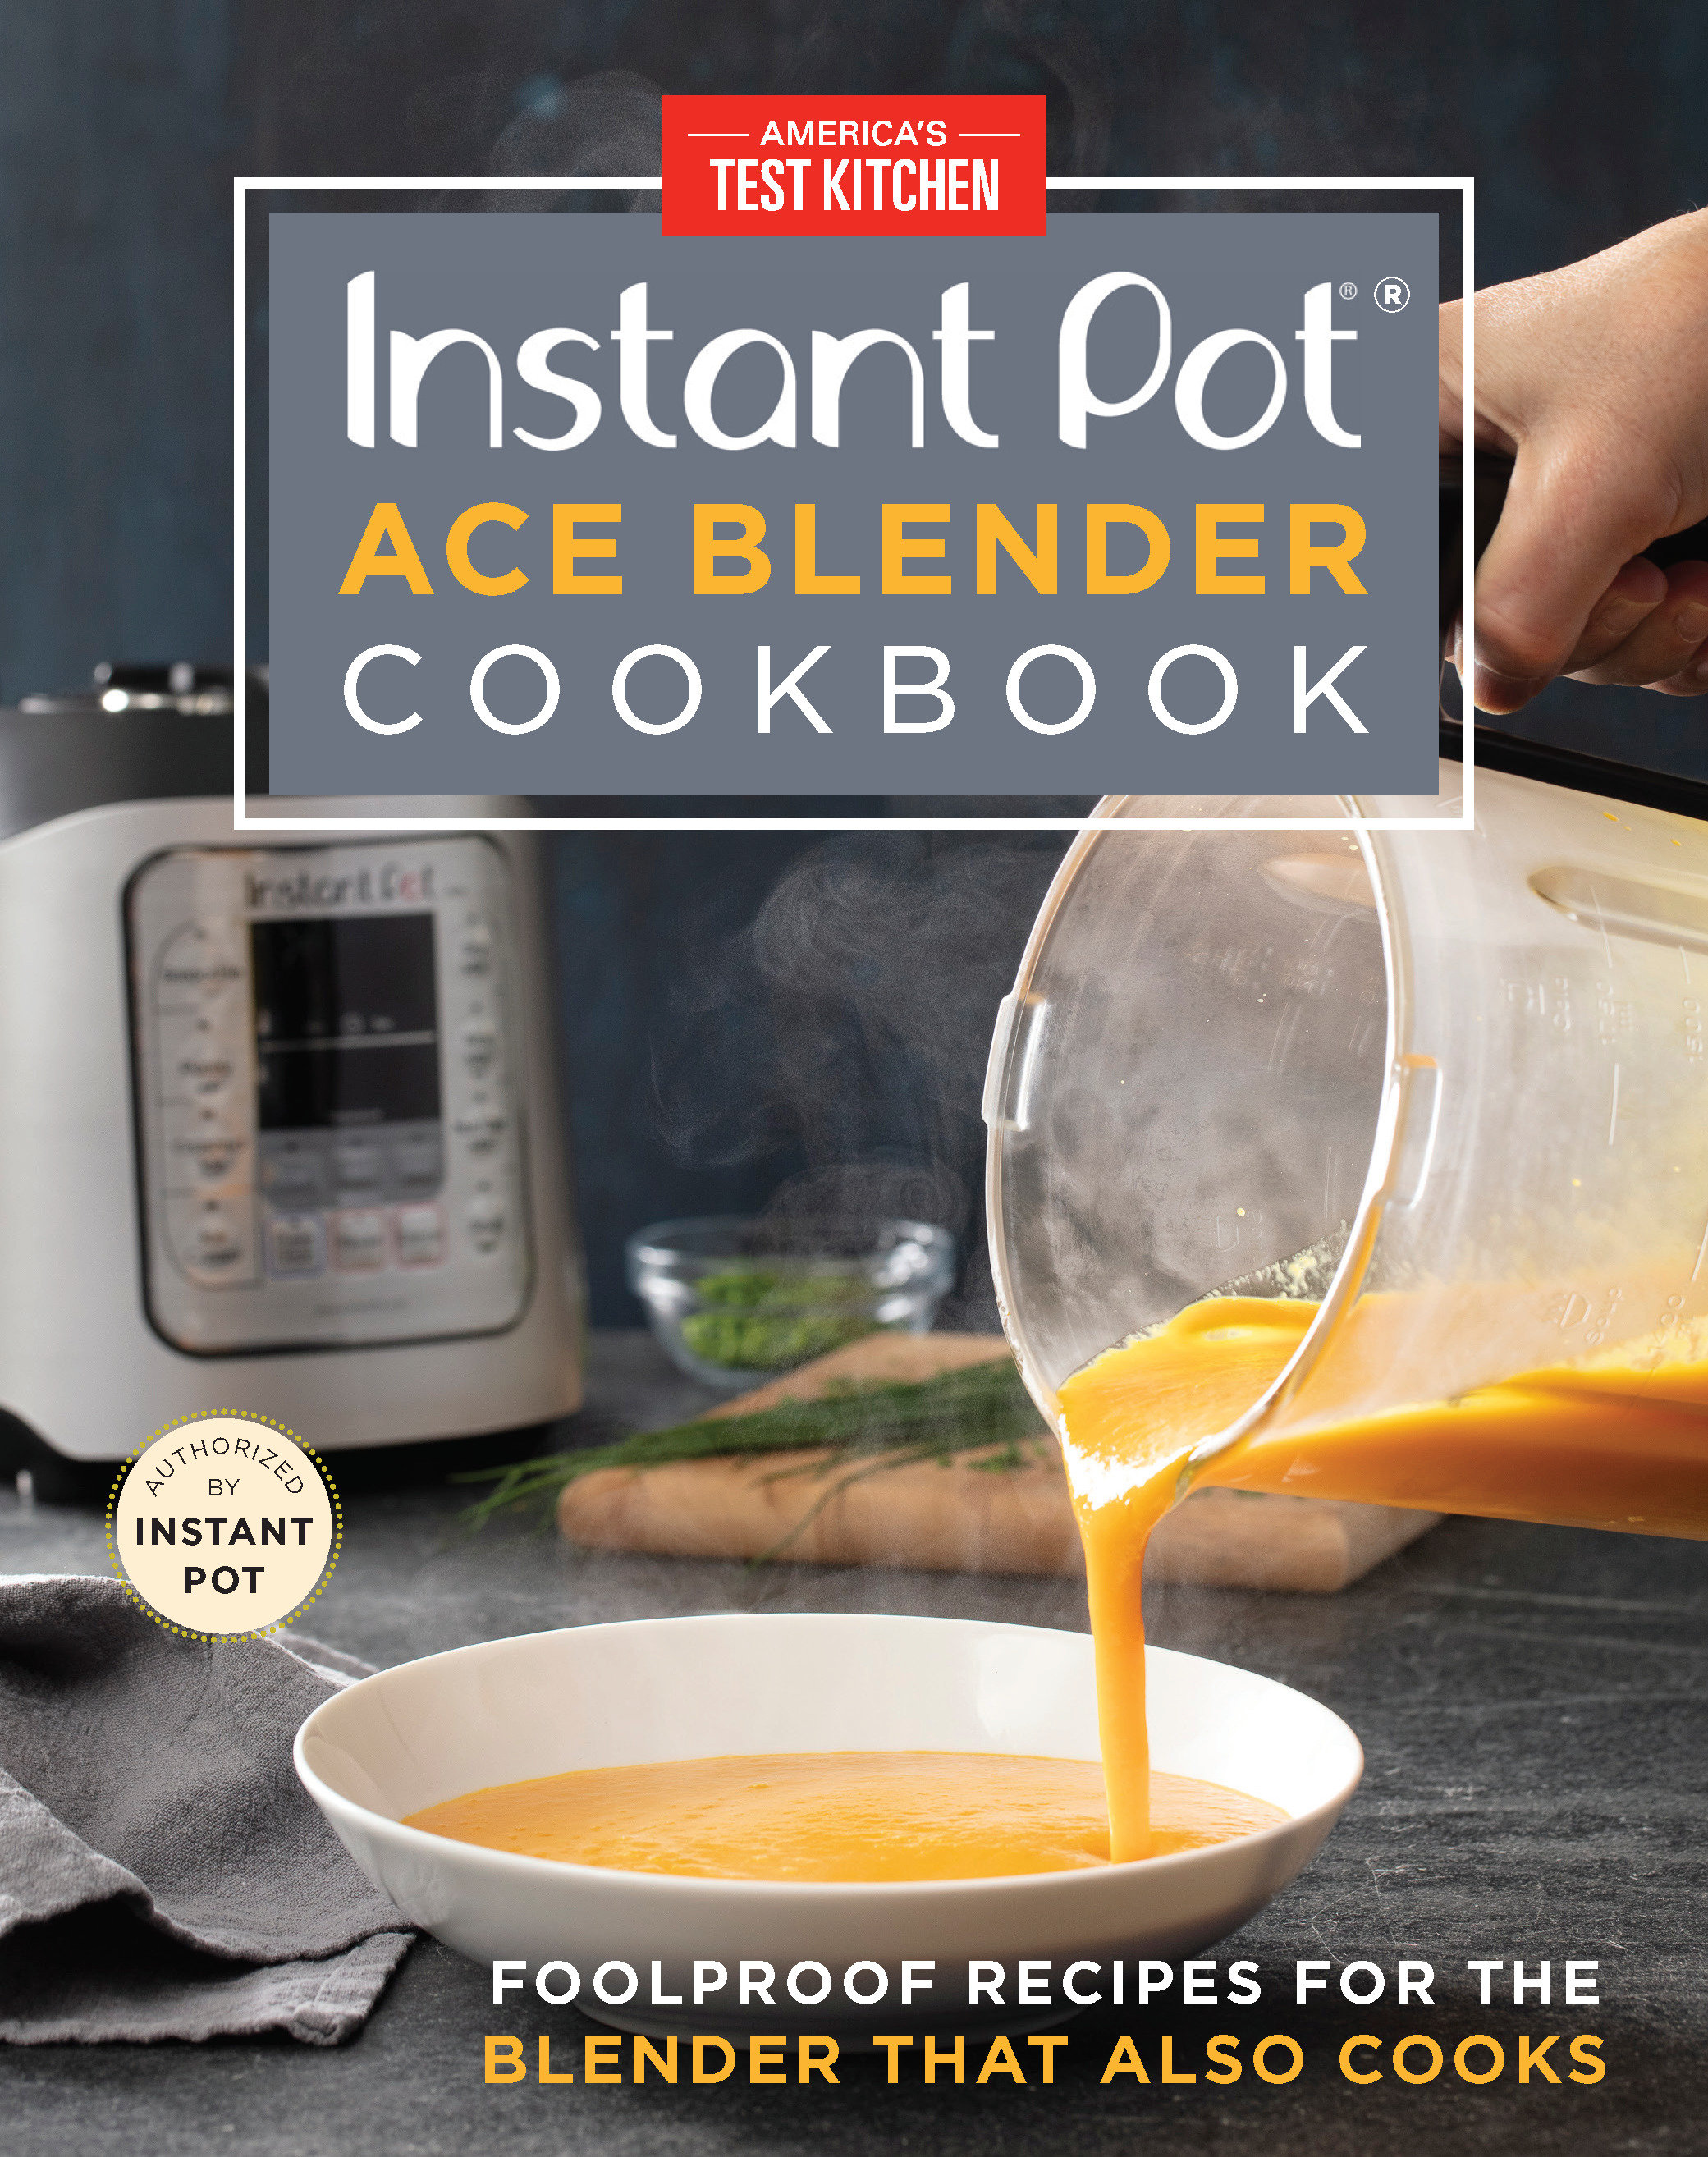 Instant pot ace blender cookbooks cover image